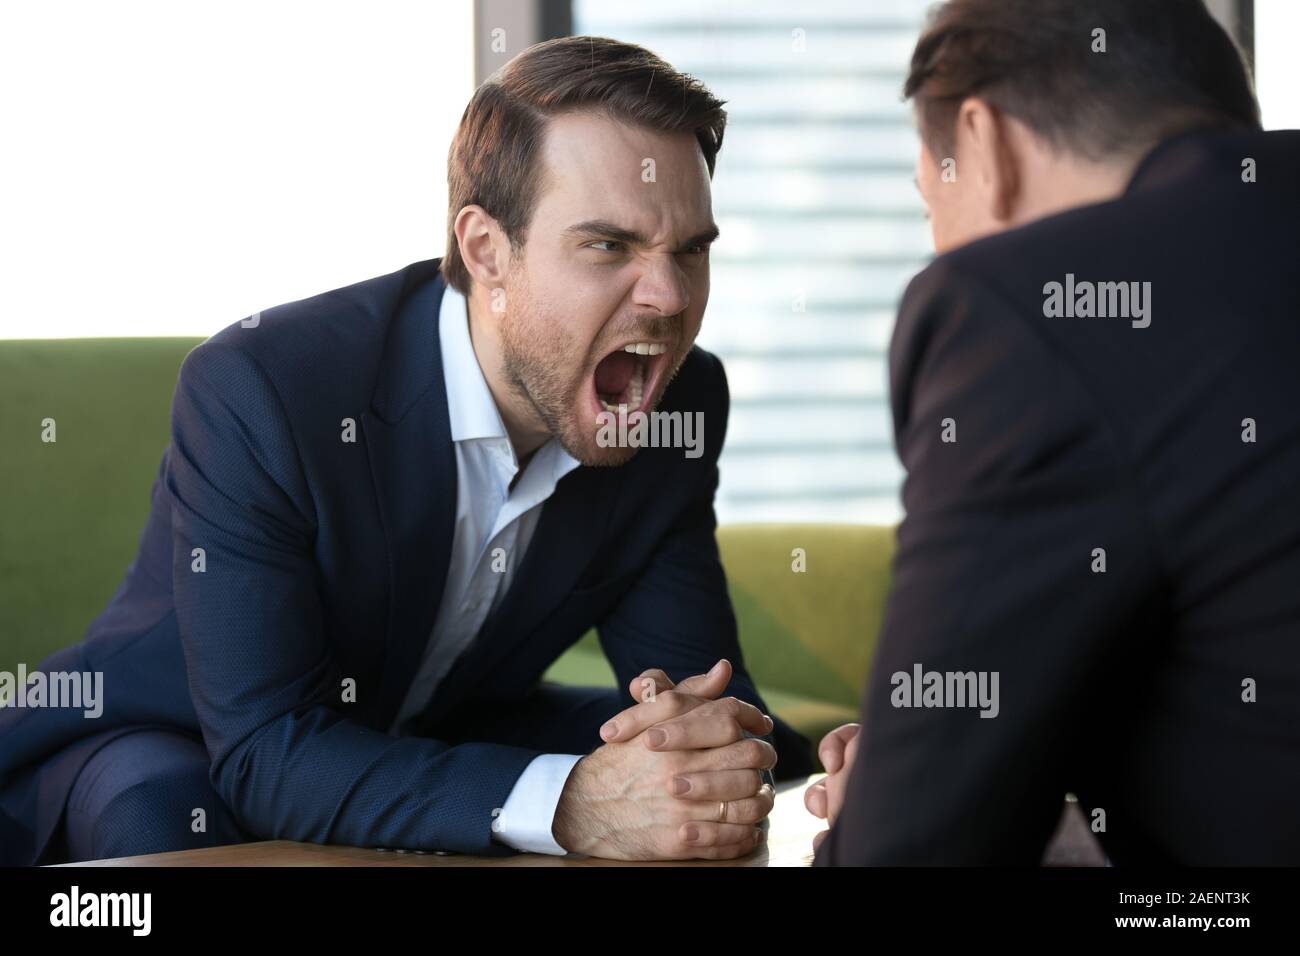 Angry businesswoman hurler à adversaire, montrant l'agression à la réunion Banque D'Images